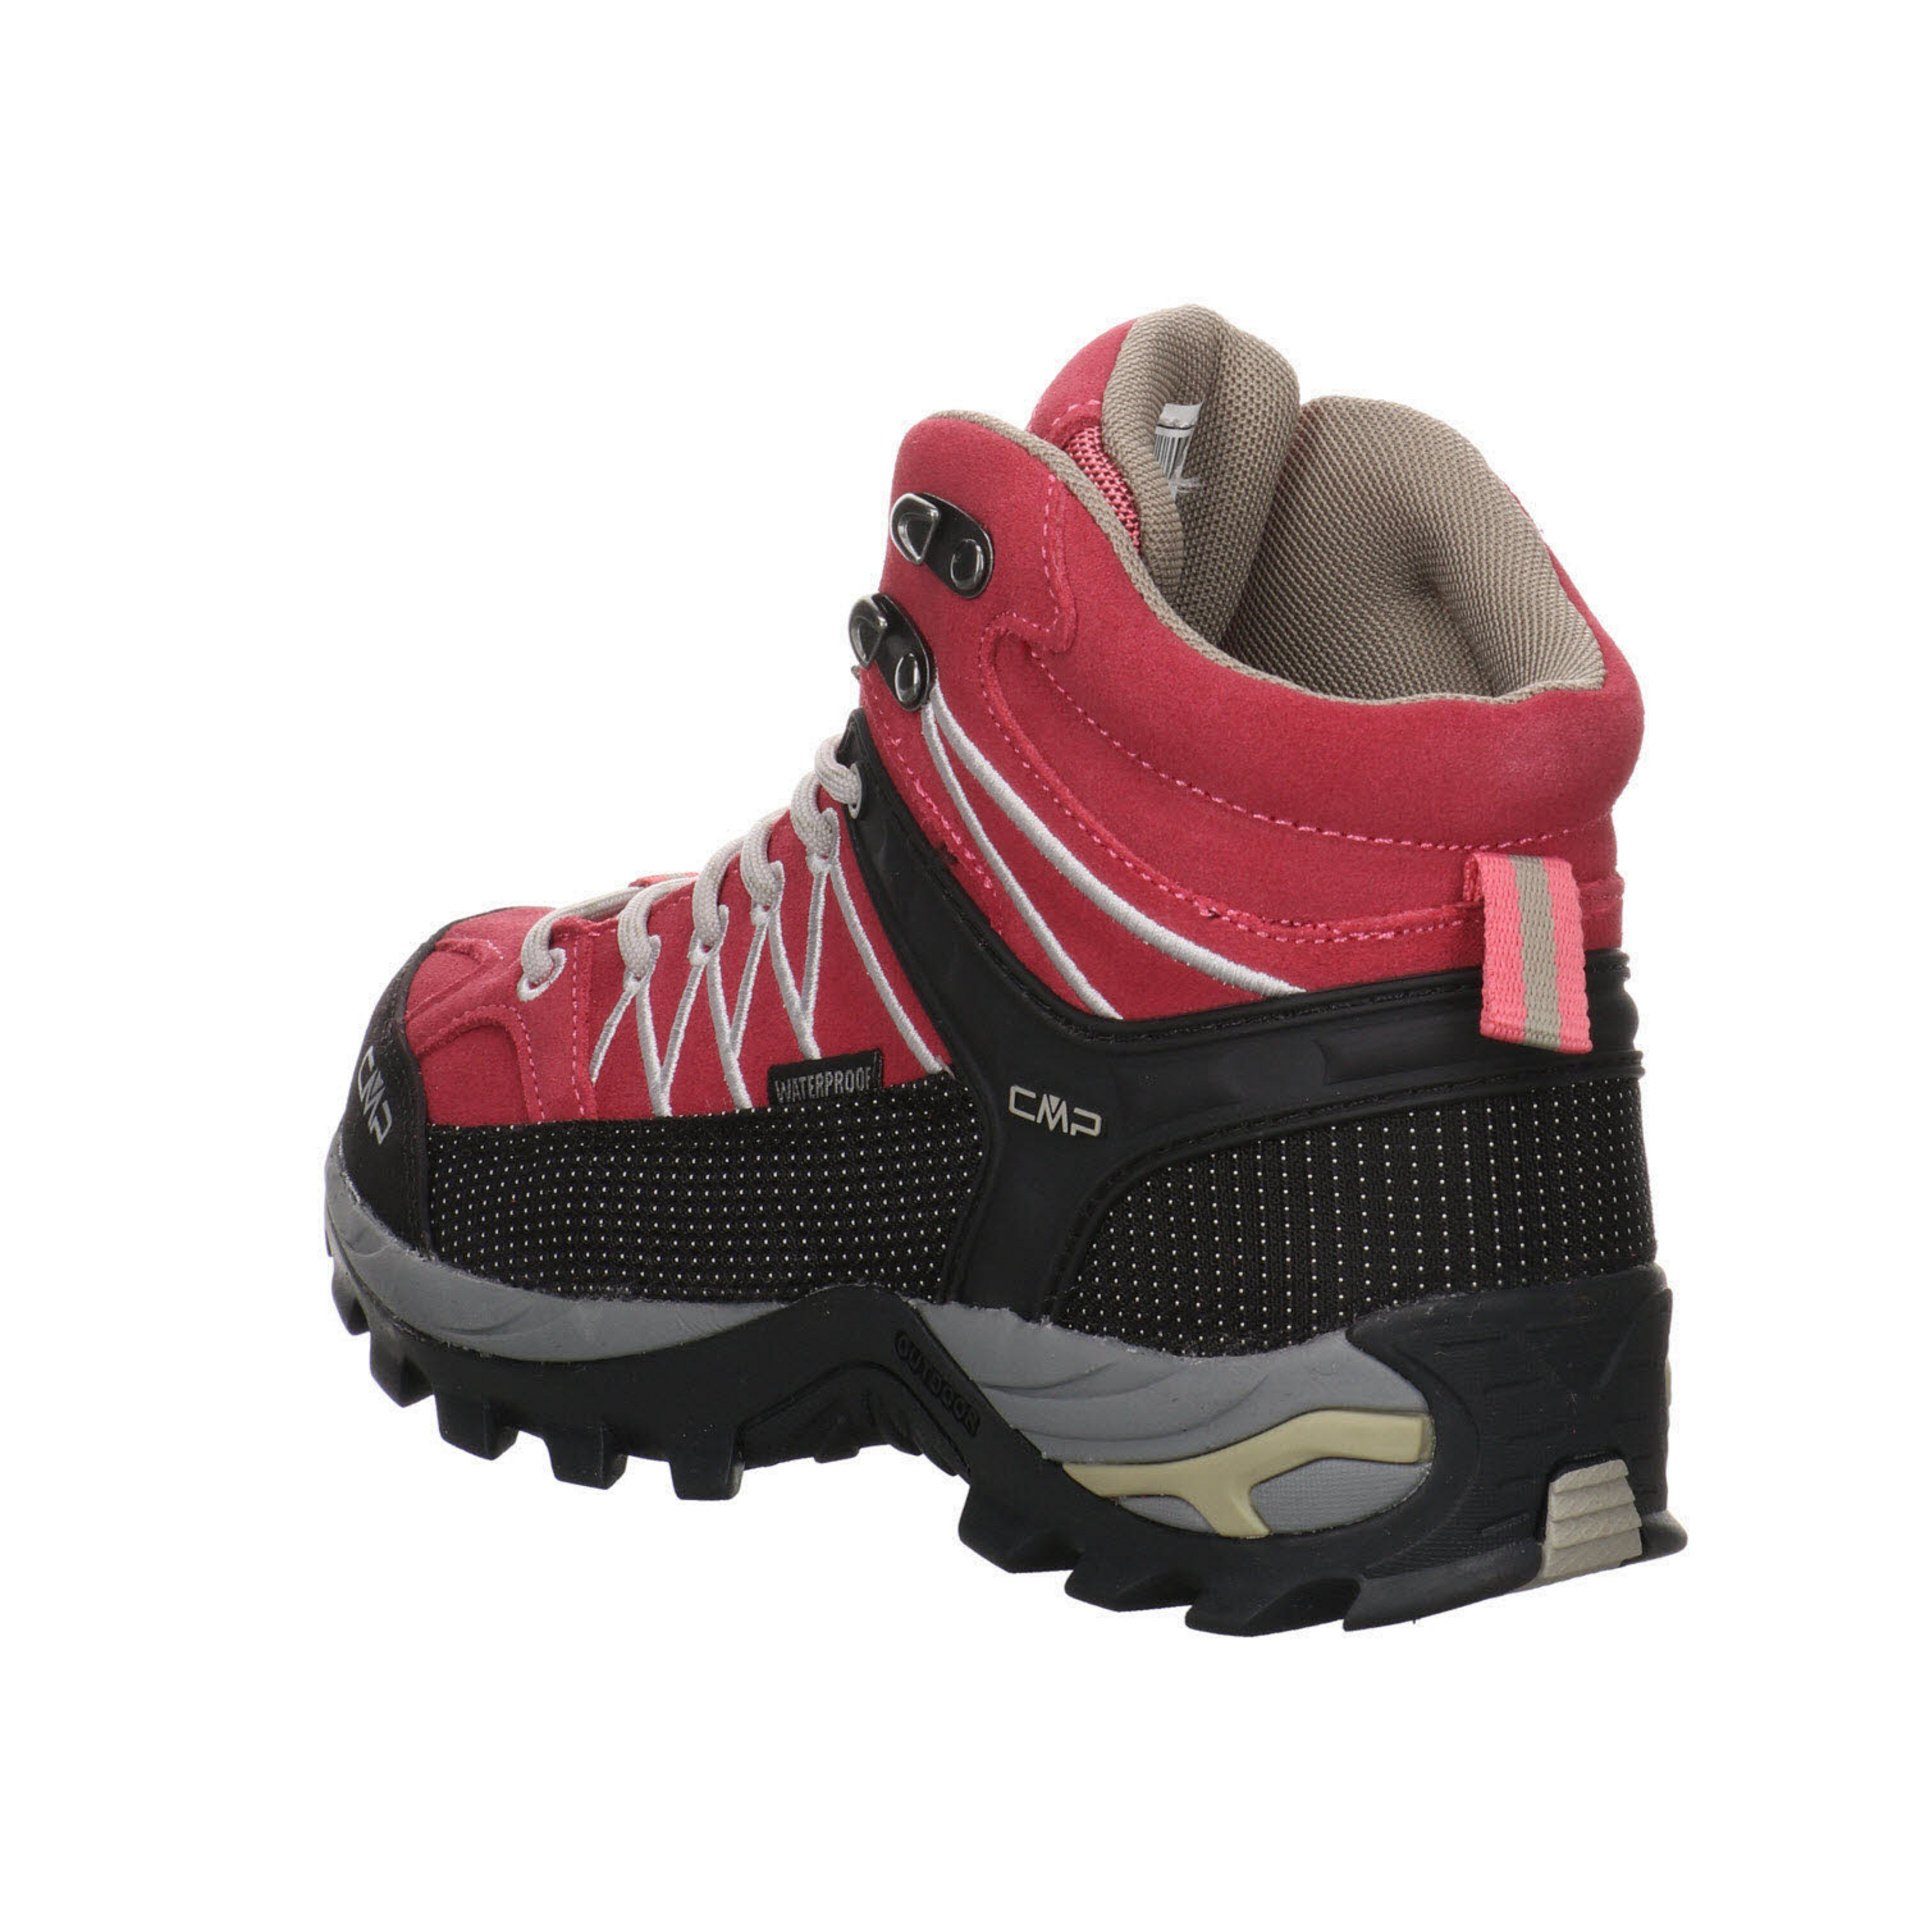 CMP Damen Schuhe Rigel ROSE-SAND Leder-/Textilkombination Outdoorschuh Outdoorschuh Mid Outdoor